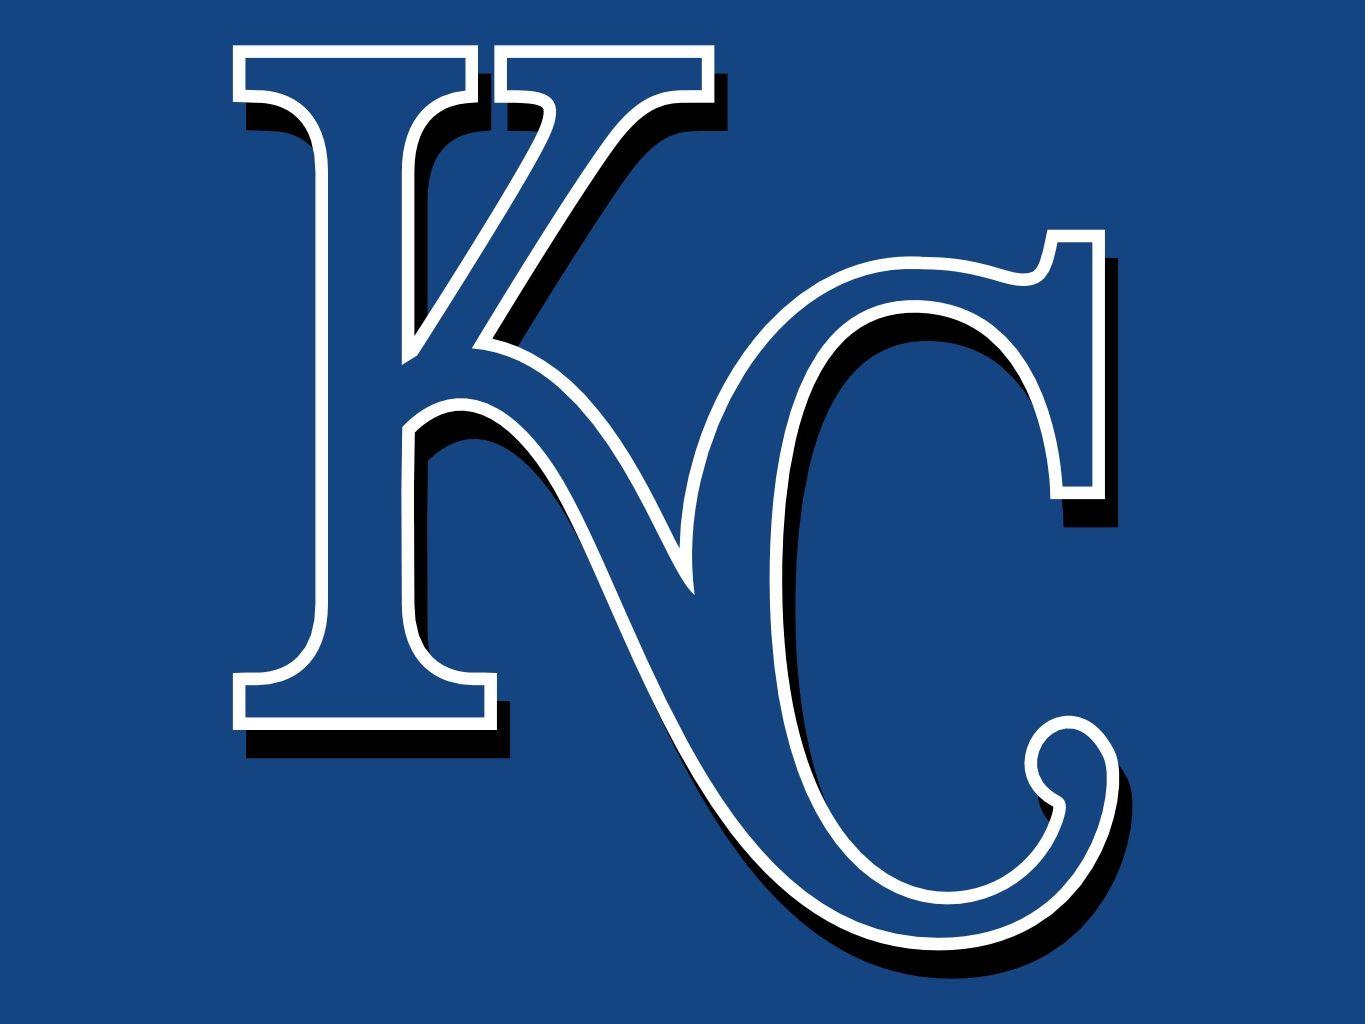 Kansas City Royals. Odd